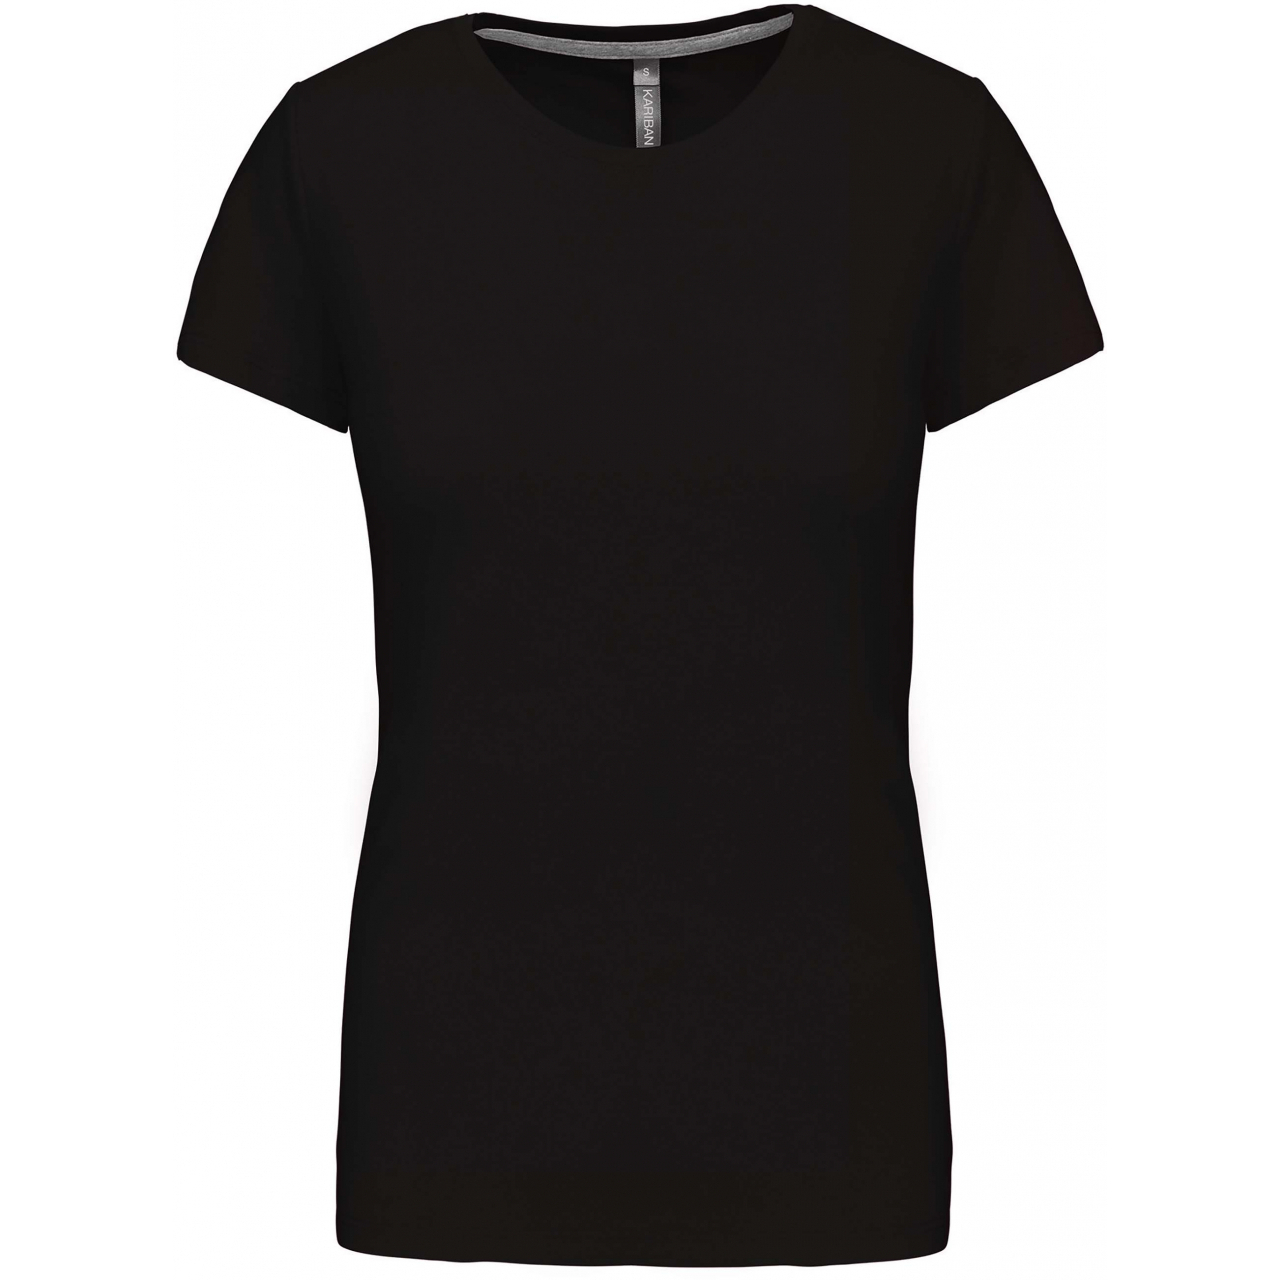 Dámské tričko Kariban s krátkým rukávem - černé, XXL